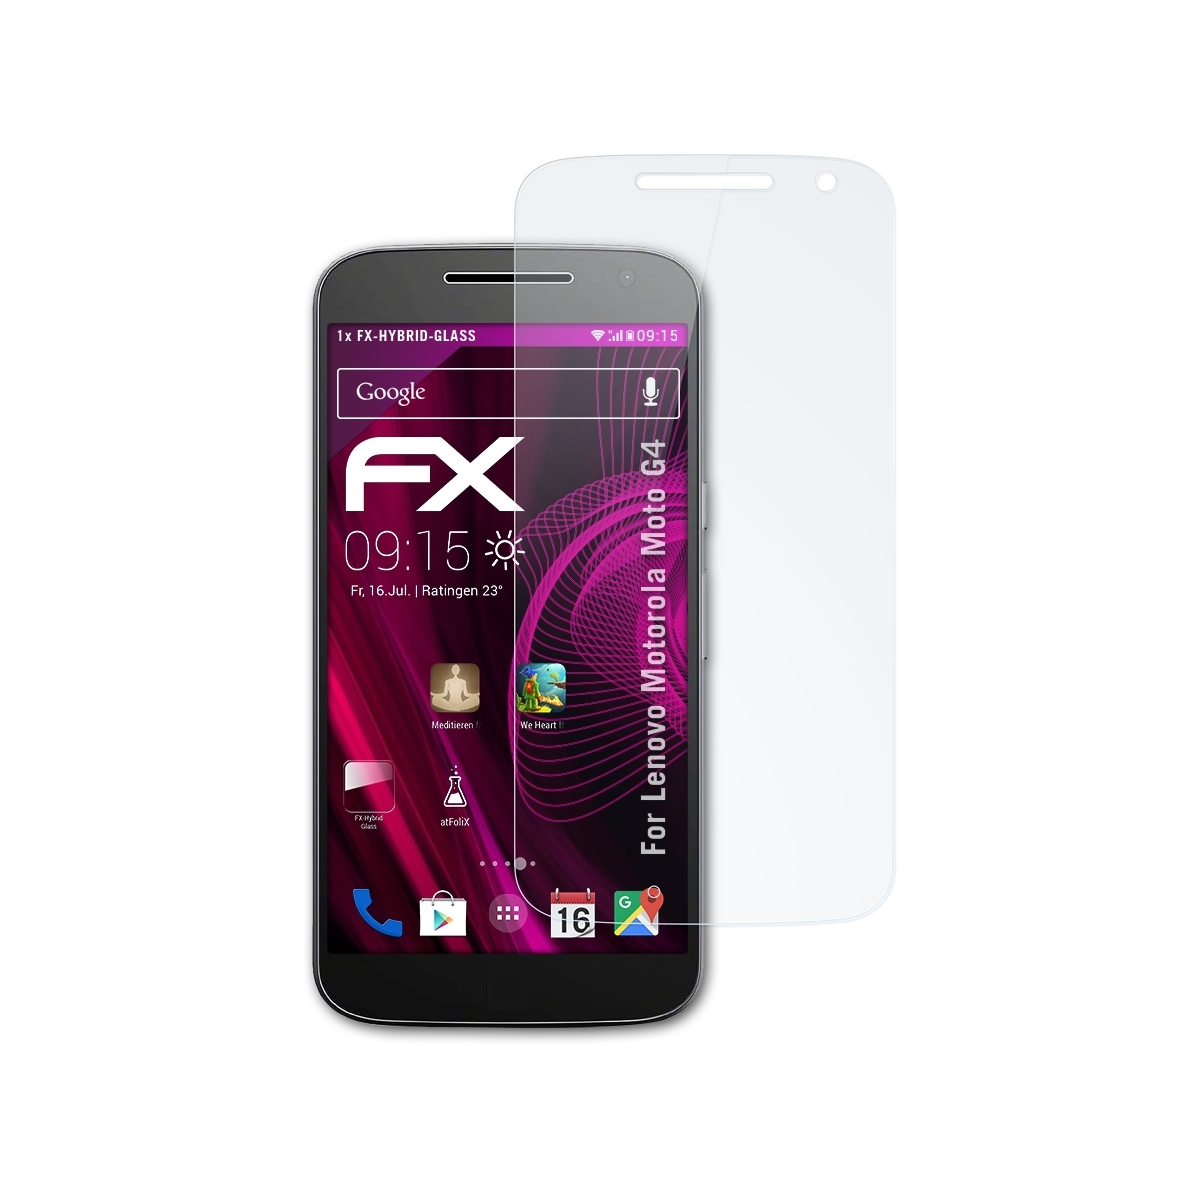 ATFOLIX FX-Hybrid-Glass Schutzglas(für Lenovo Motorola G4) Moto